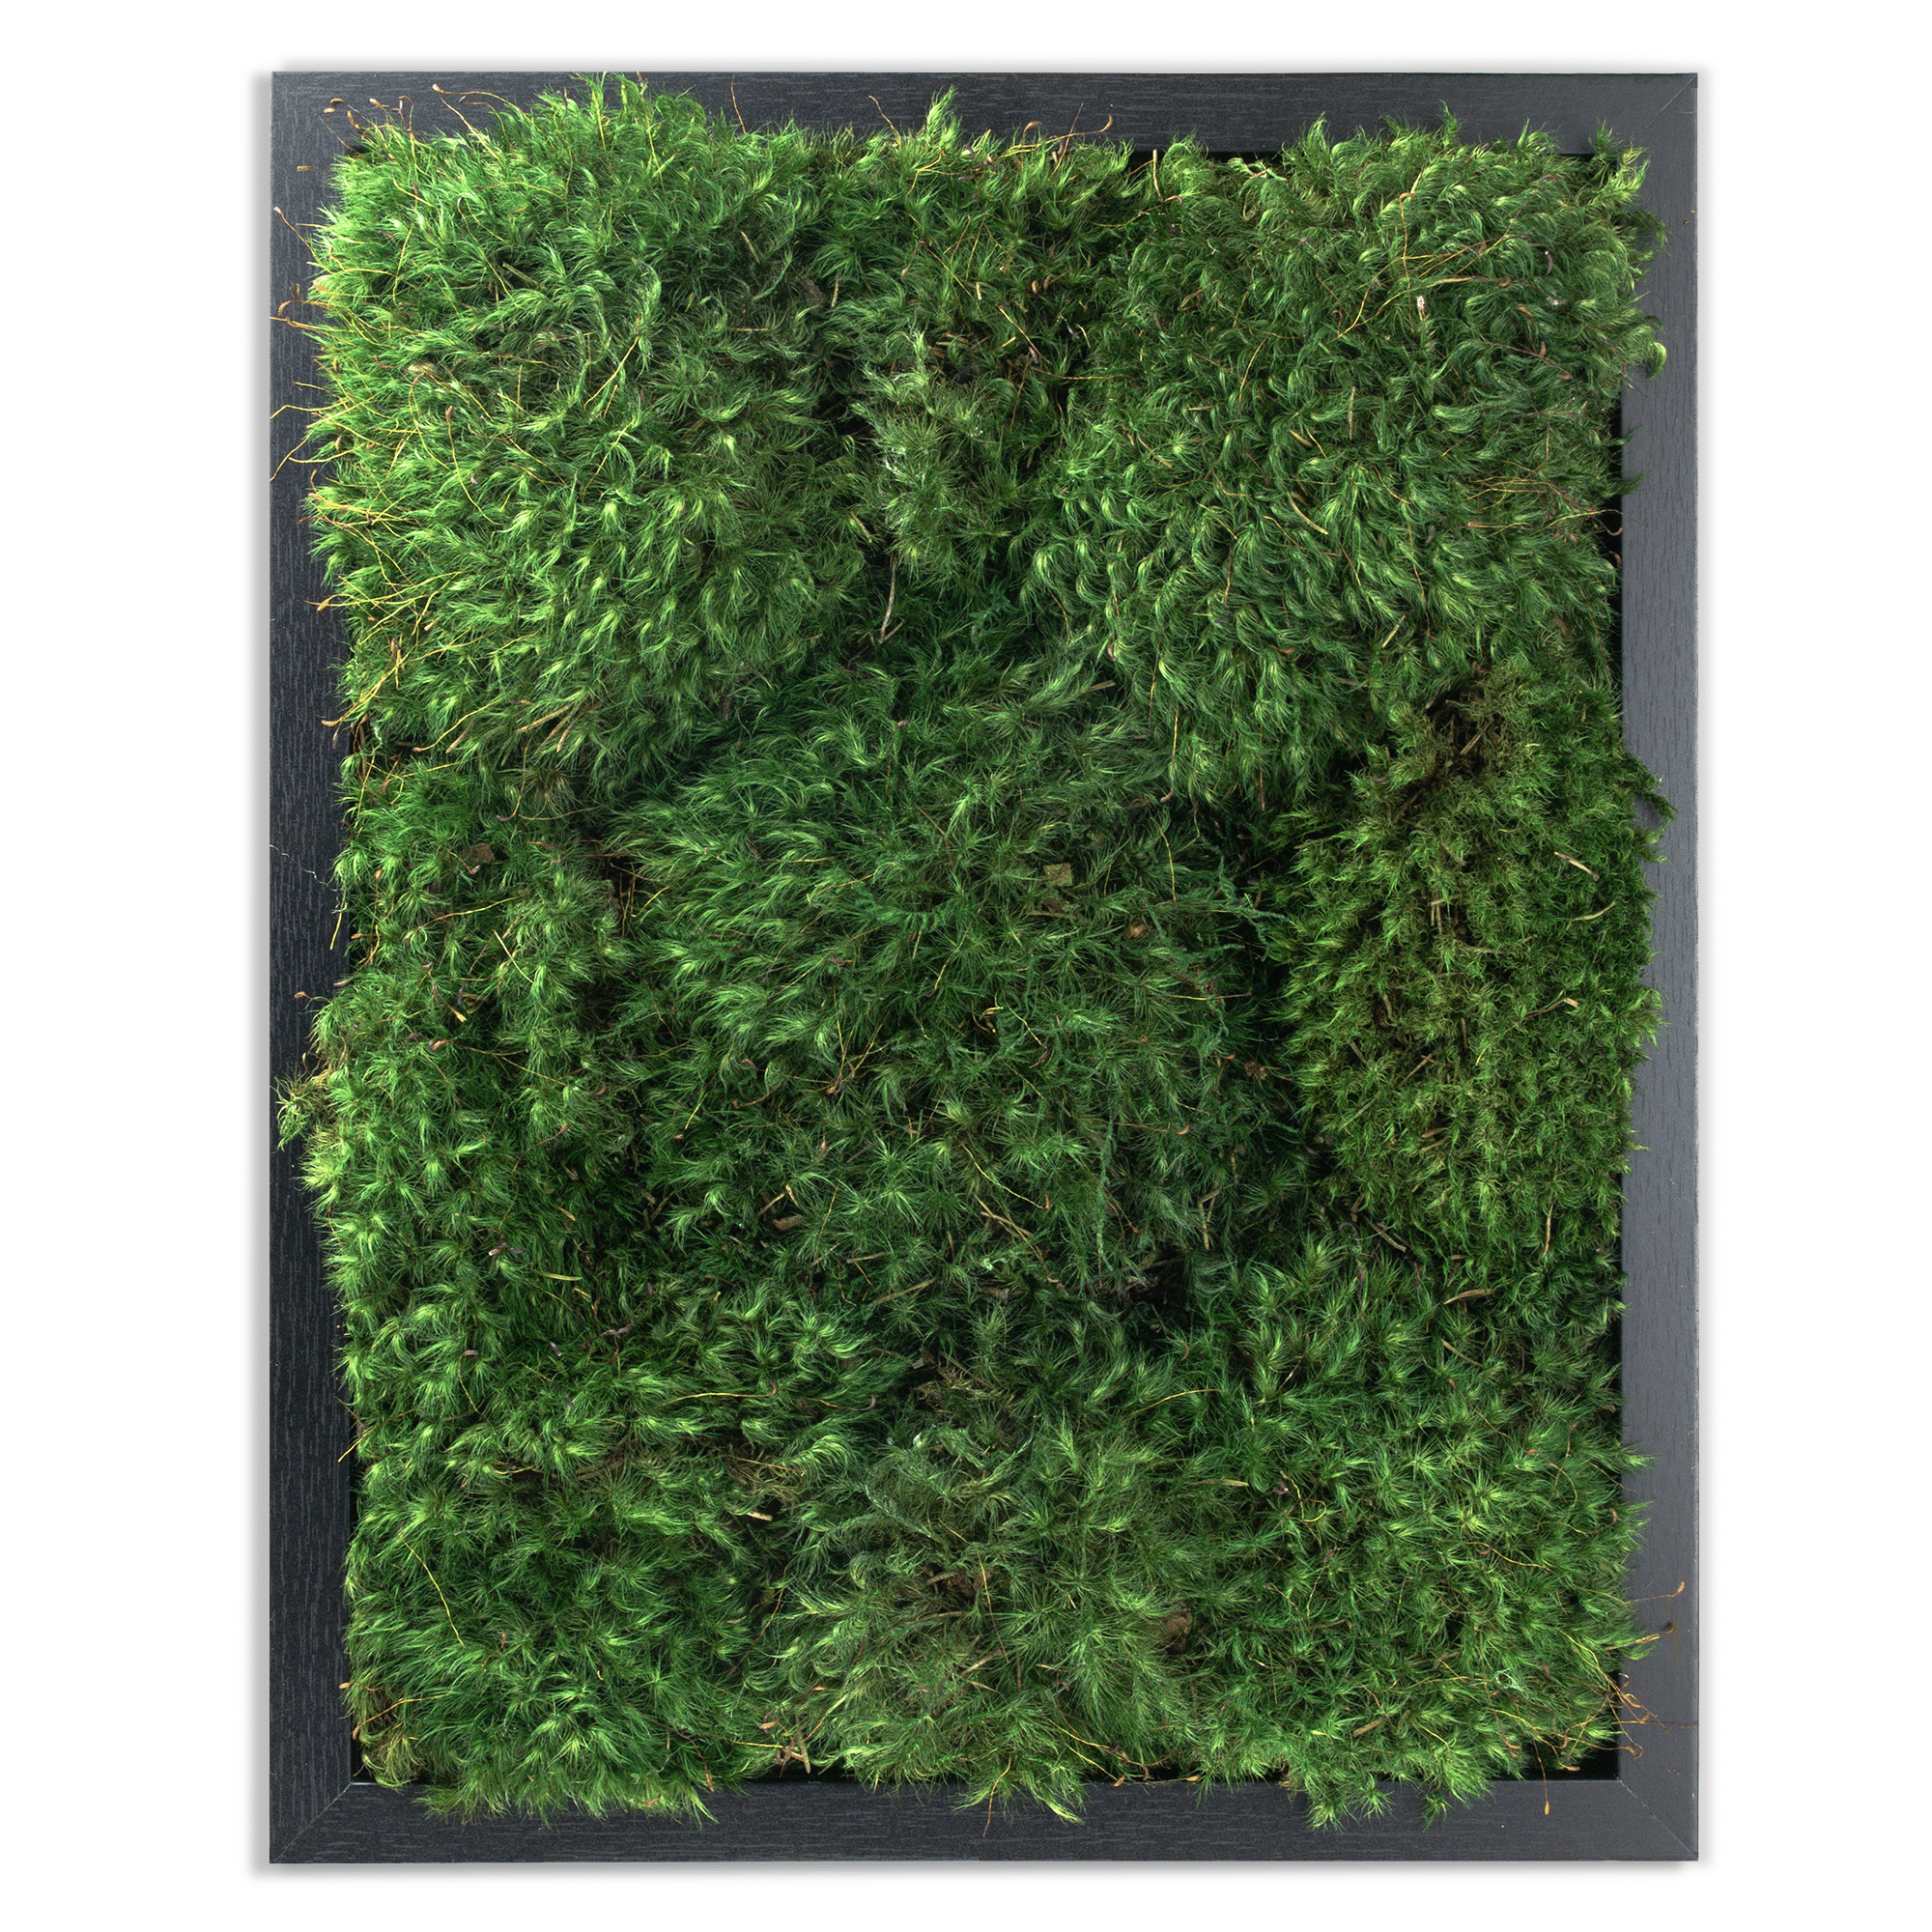 Moss Wall Art. Moss Wall. Moss Art Panels. Green Wall Art. 